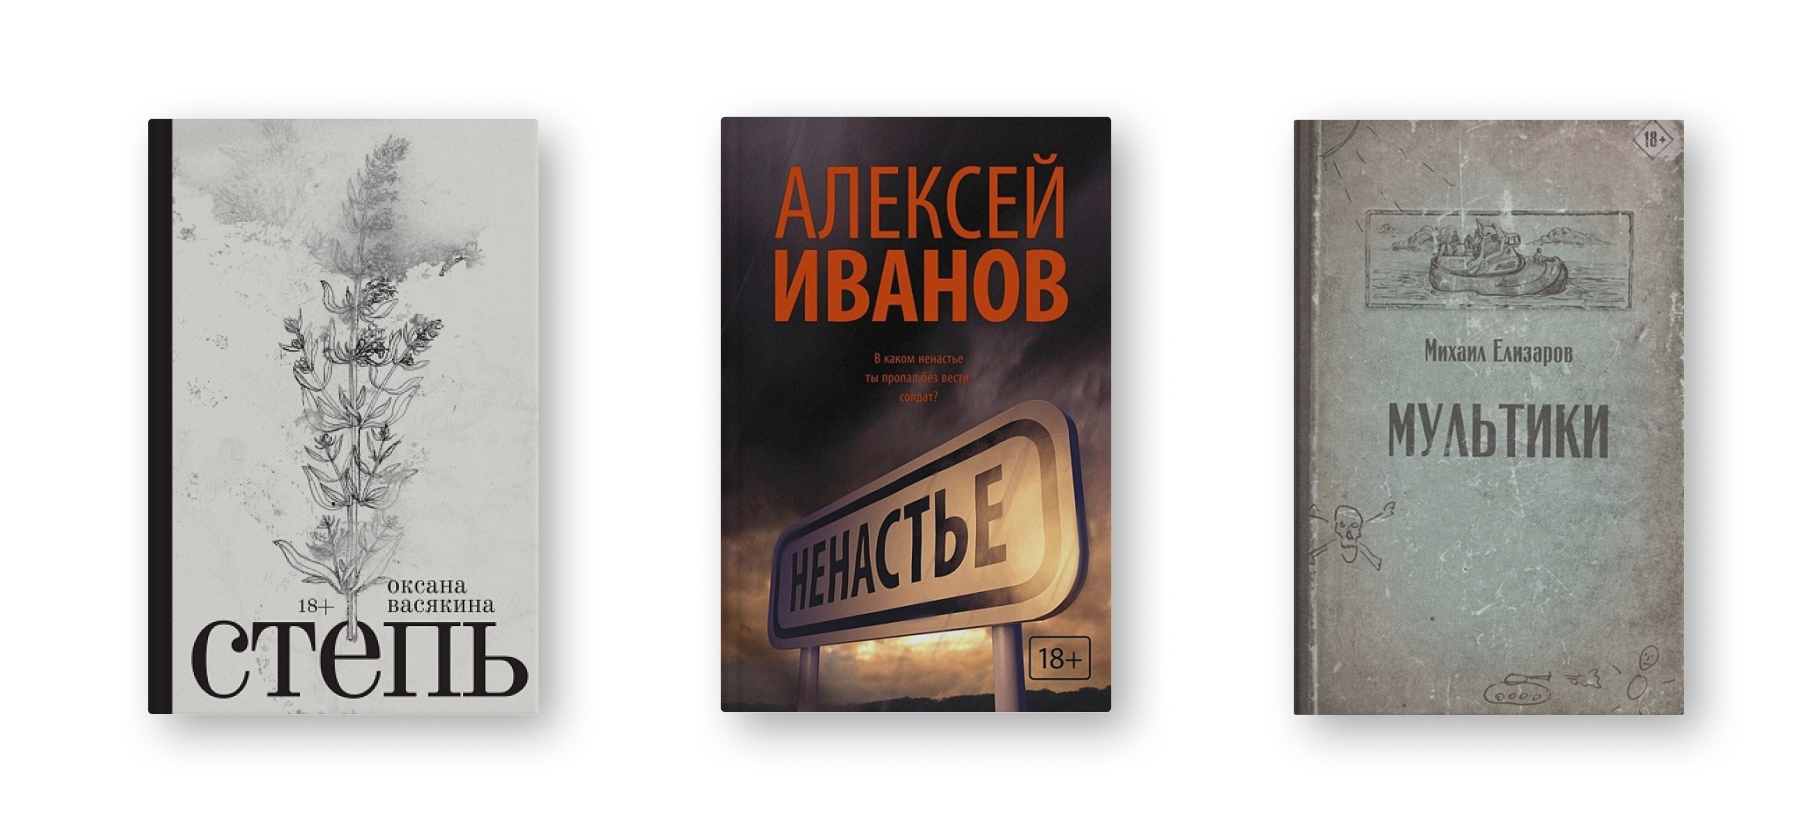 7 художественных книг о преступности в СССР и России 1980—1990-х